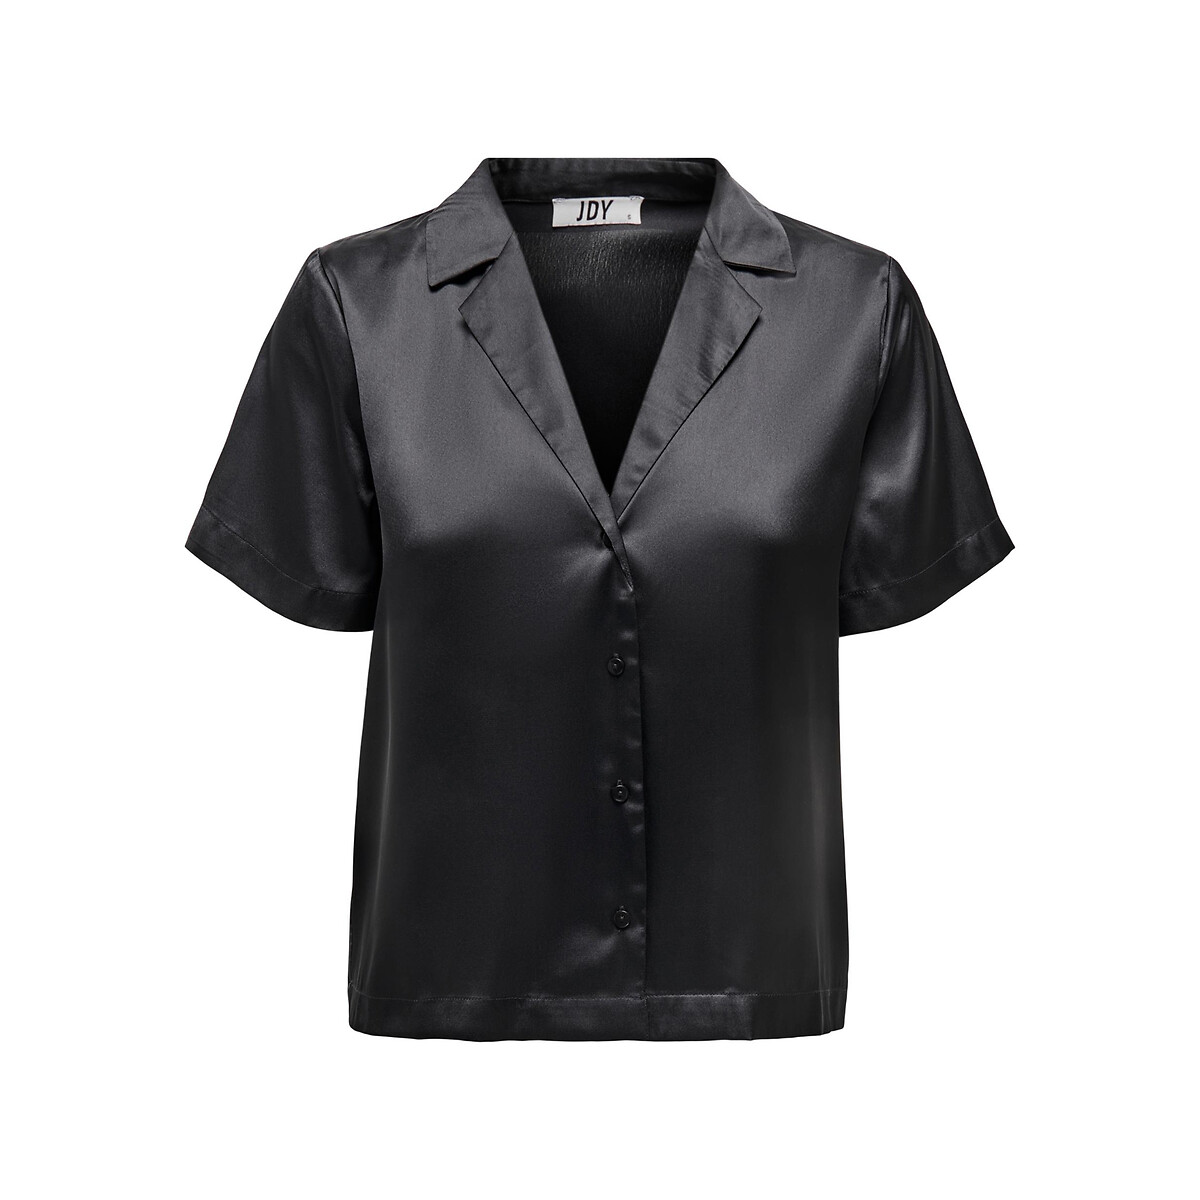 Блузка Из сатина короткие рукава XL черный LaRedoute, размер XL - фото 2